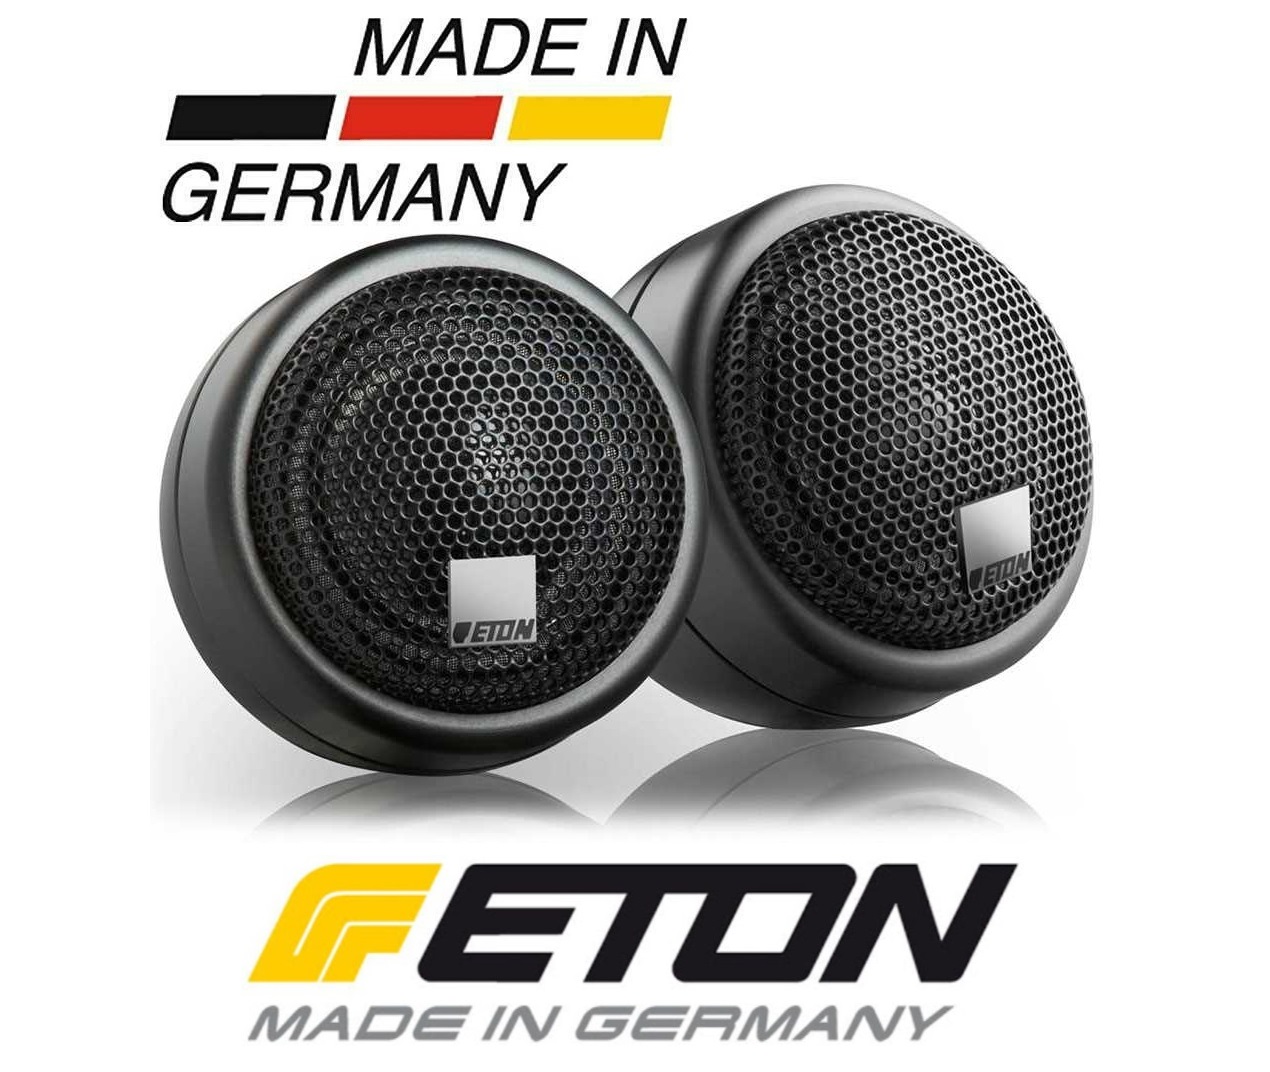 ETON AG25 Aluminium Aufbaugehäuse für alle 25 mm ETON Hochtöner - 1 Paar